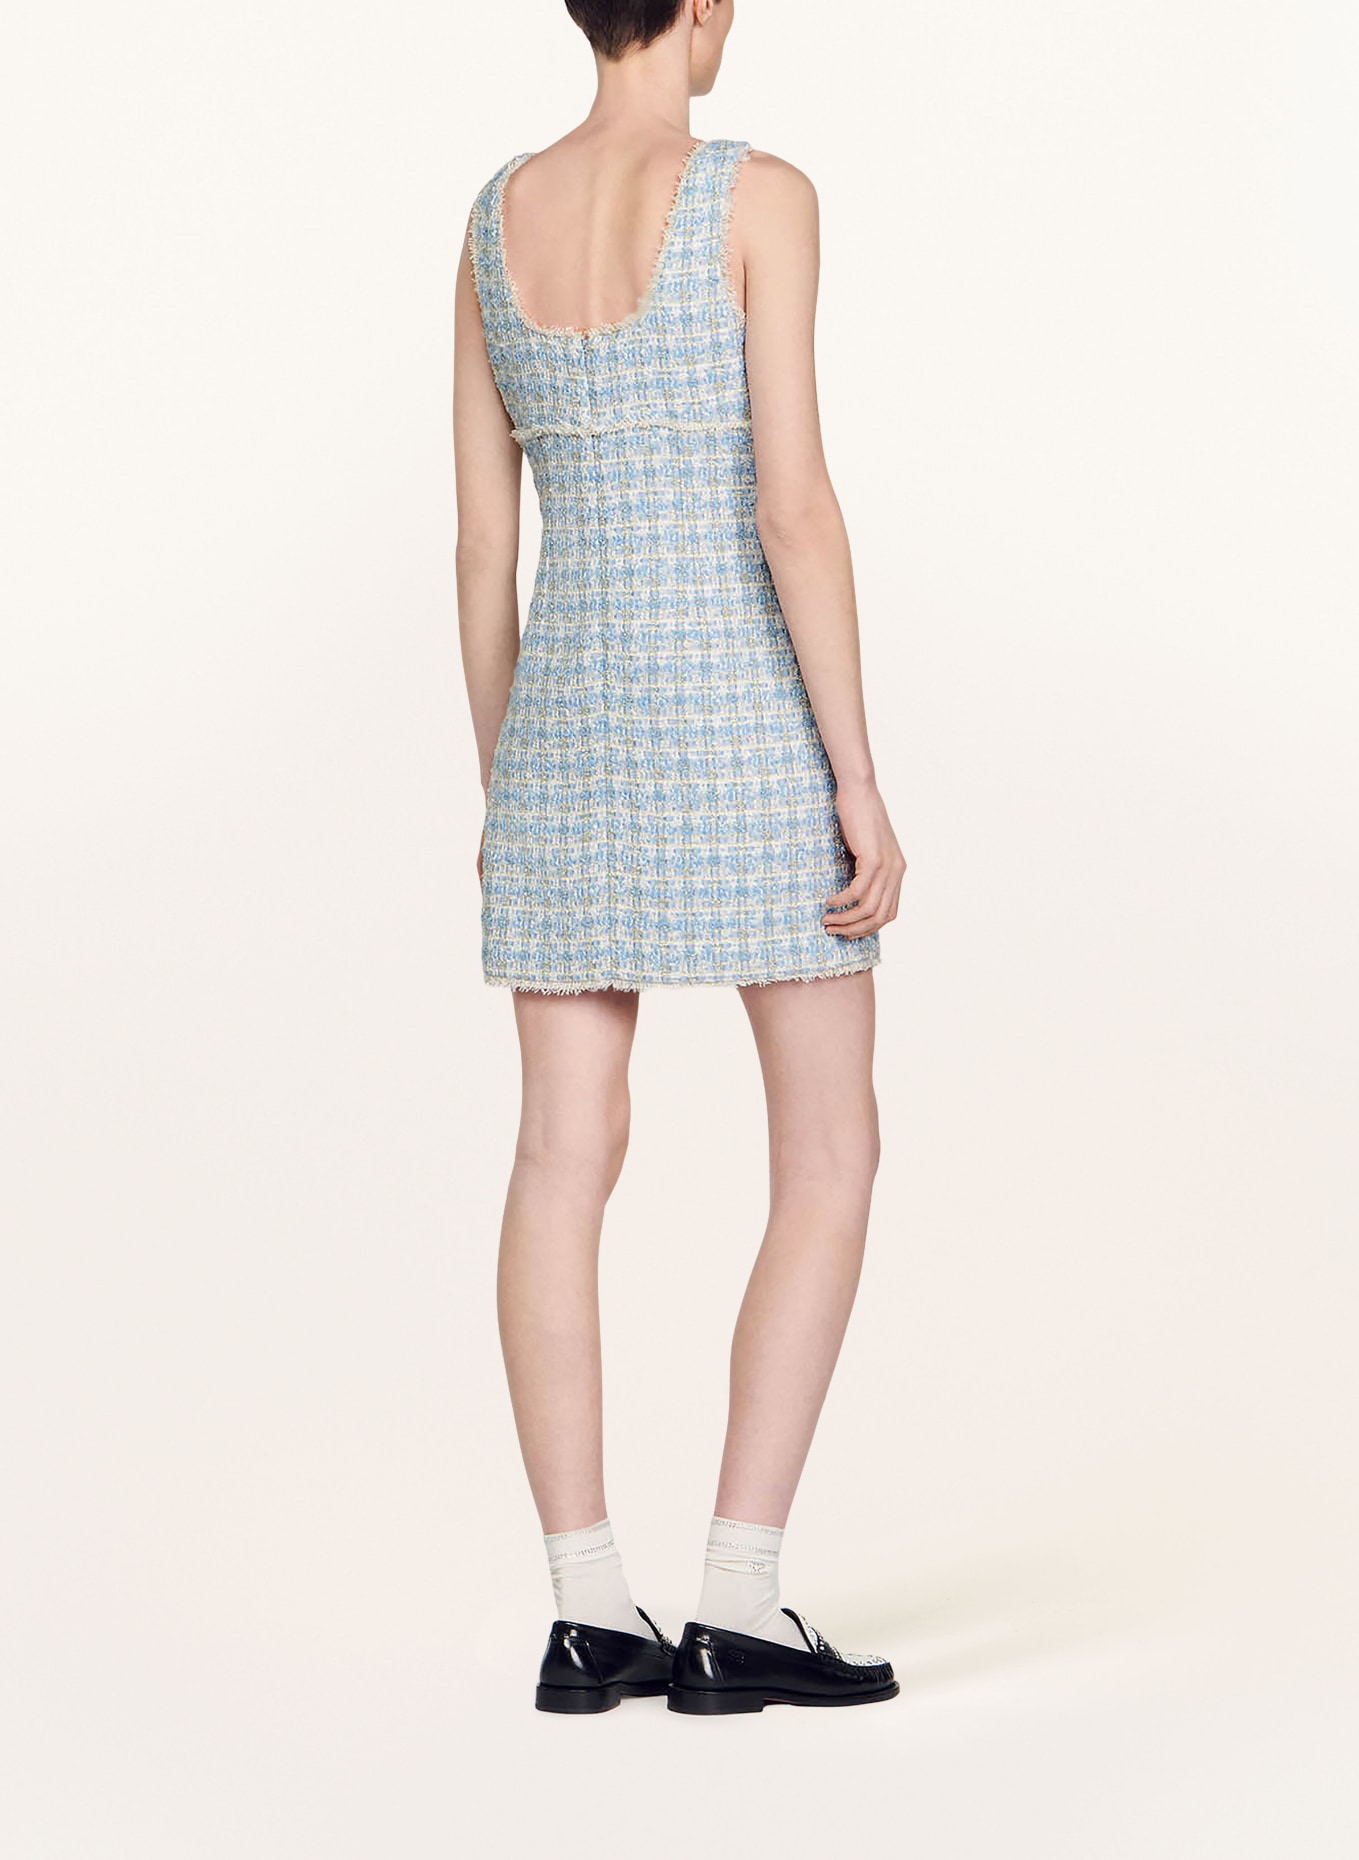 SANDRO Tweed-Kleid mit Glitzergarn, Farbe: BLAU/ SILBER/ WEISS (Bild 3)